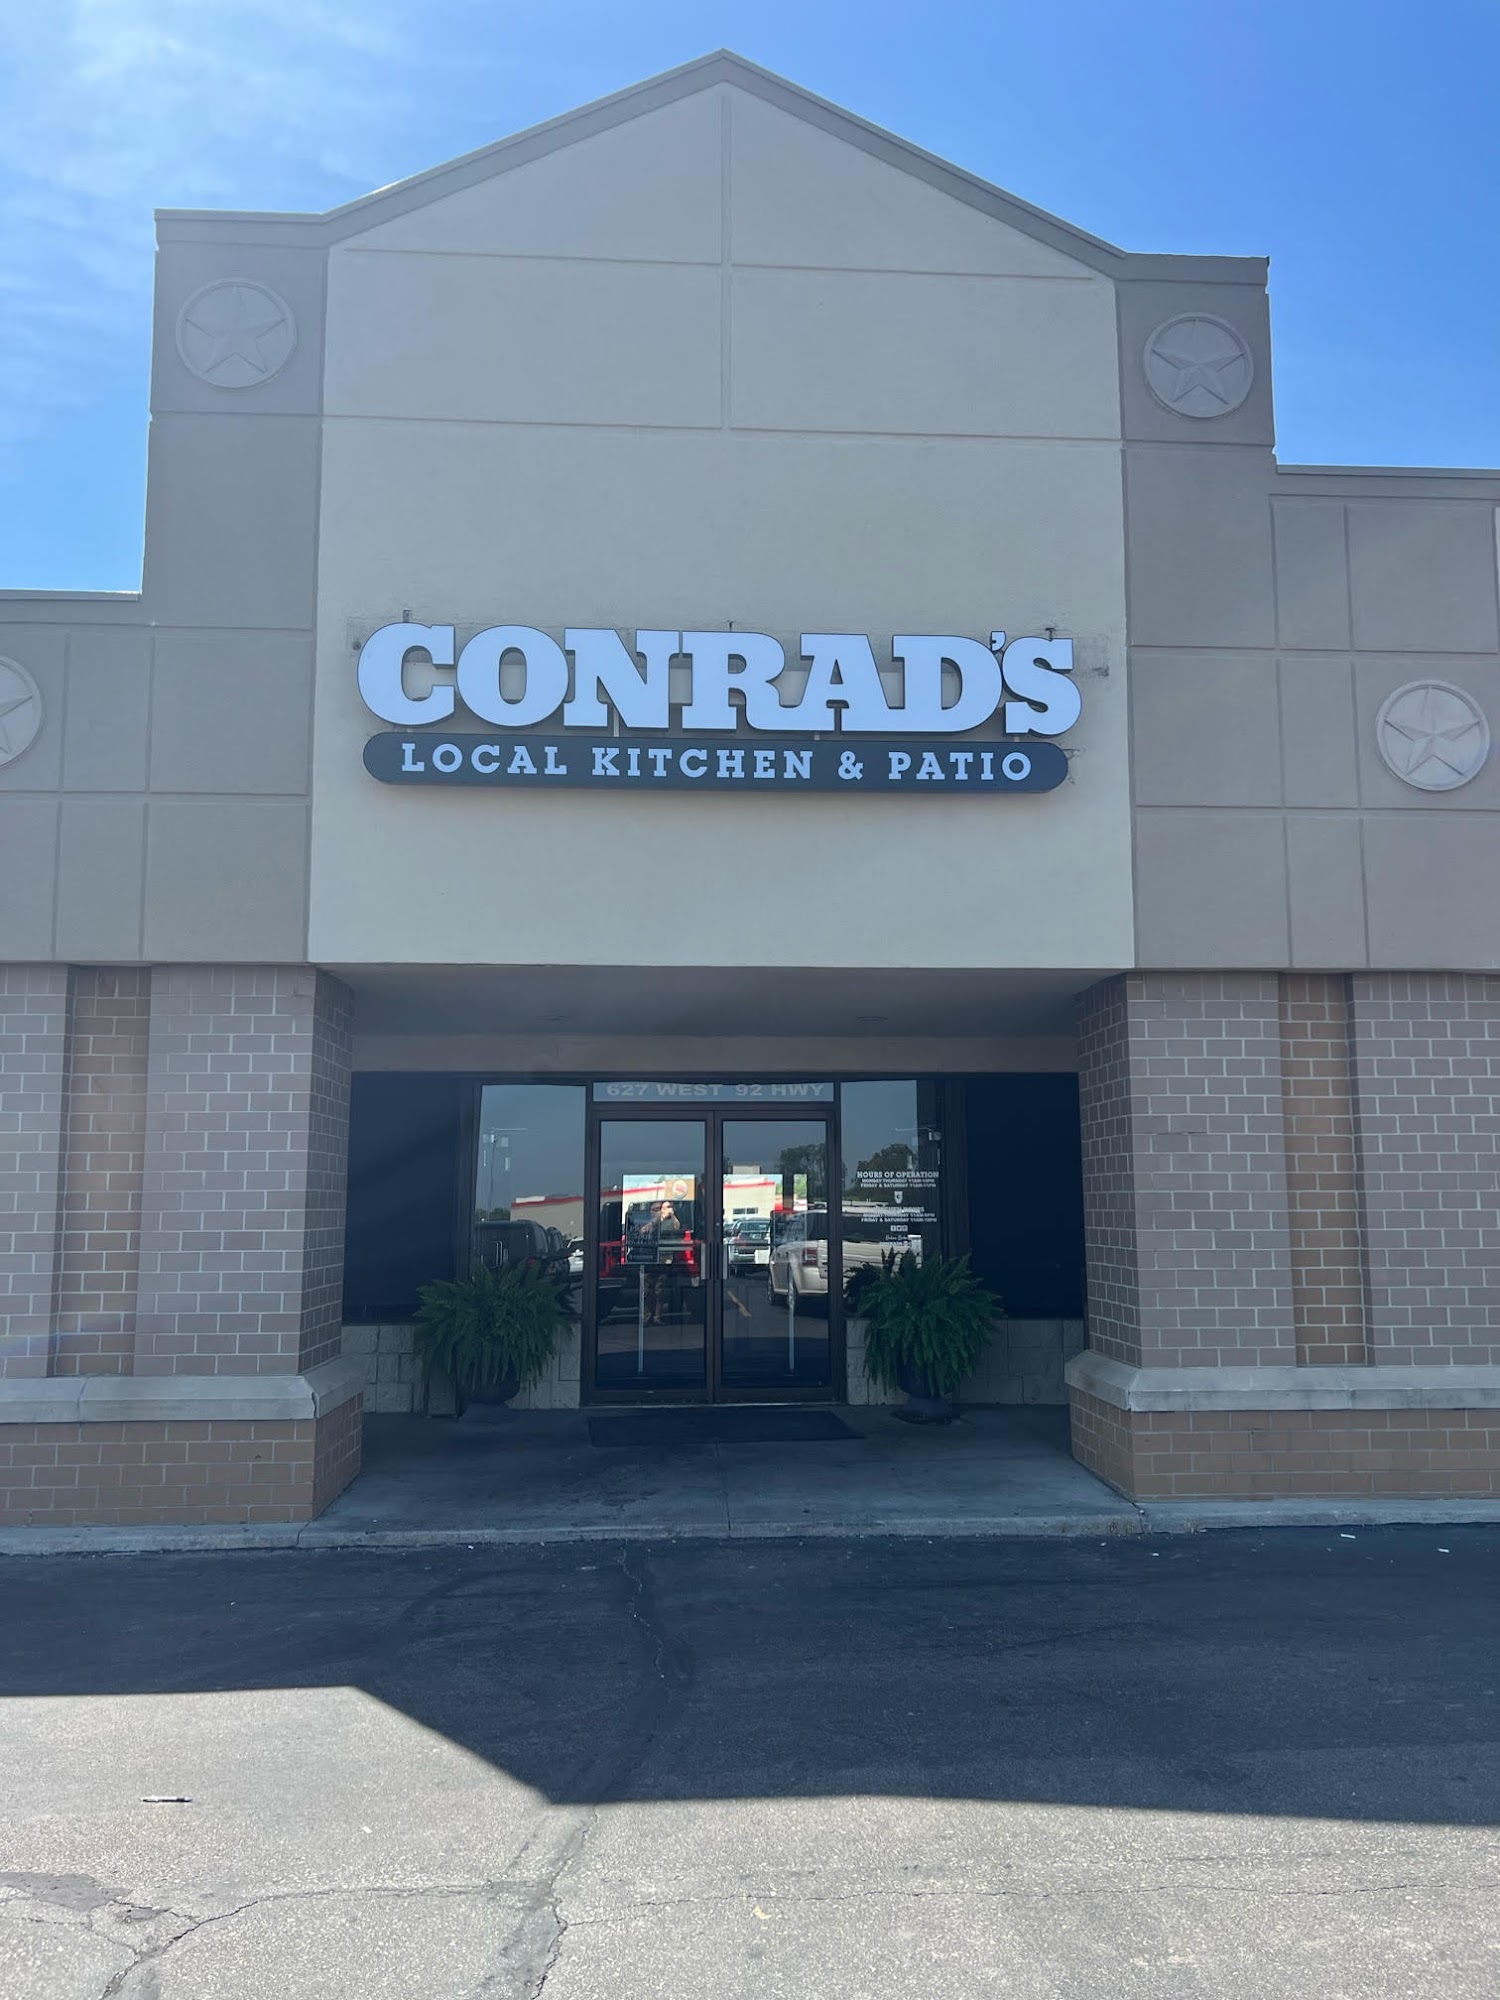 CONRAD'S Local Kitchen & Patio